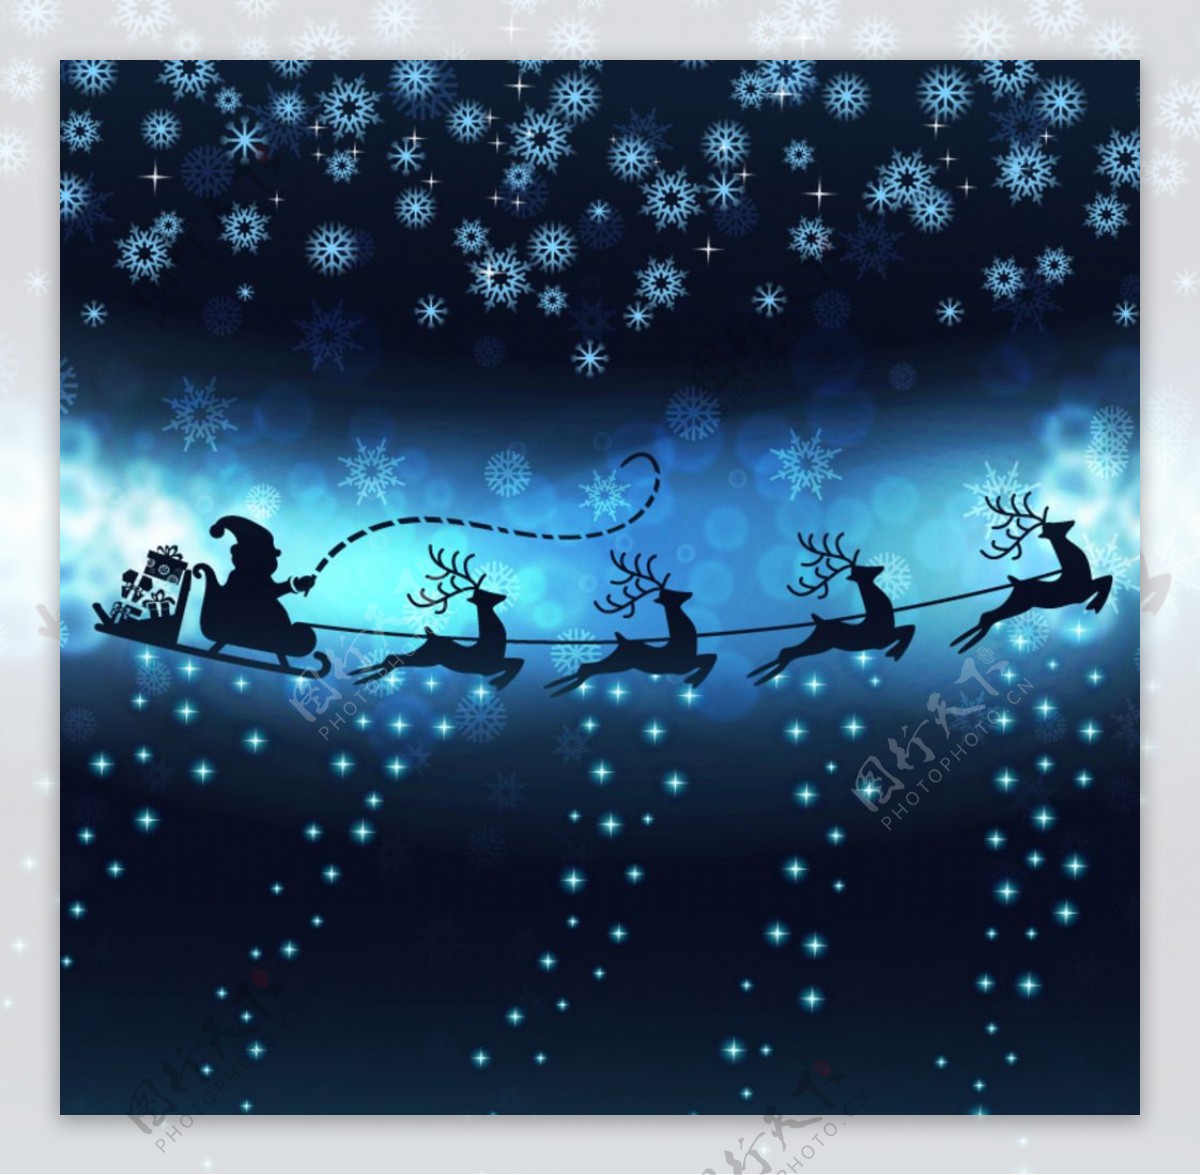 蓝色圣诞雪背景素材蓝色雪夜背景